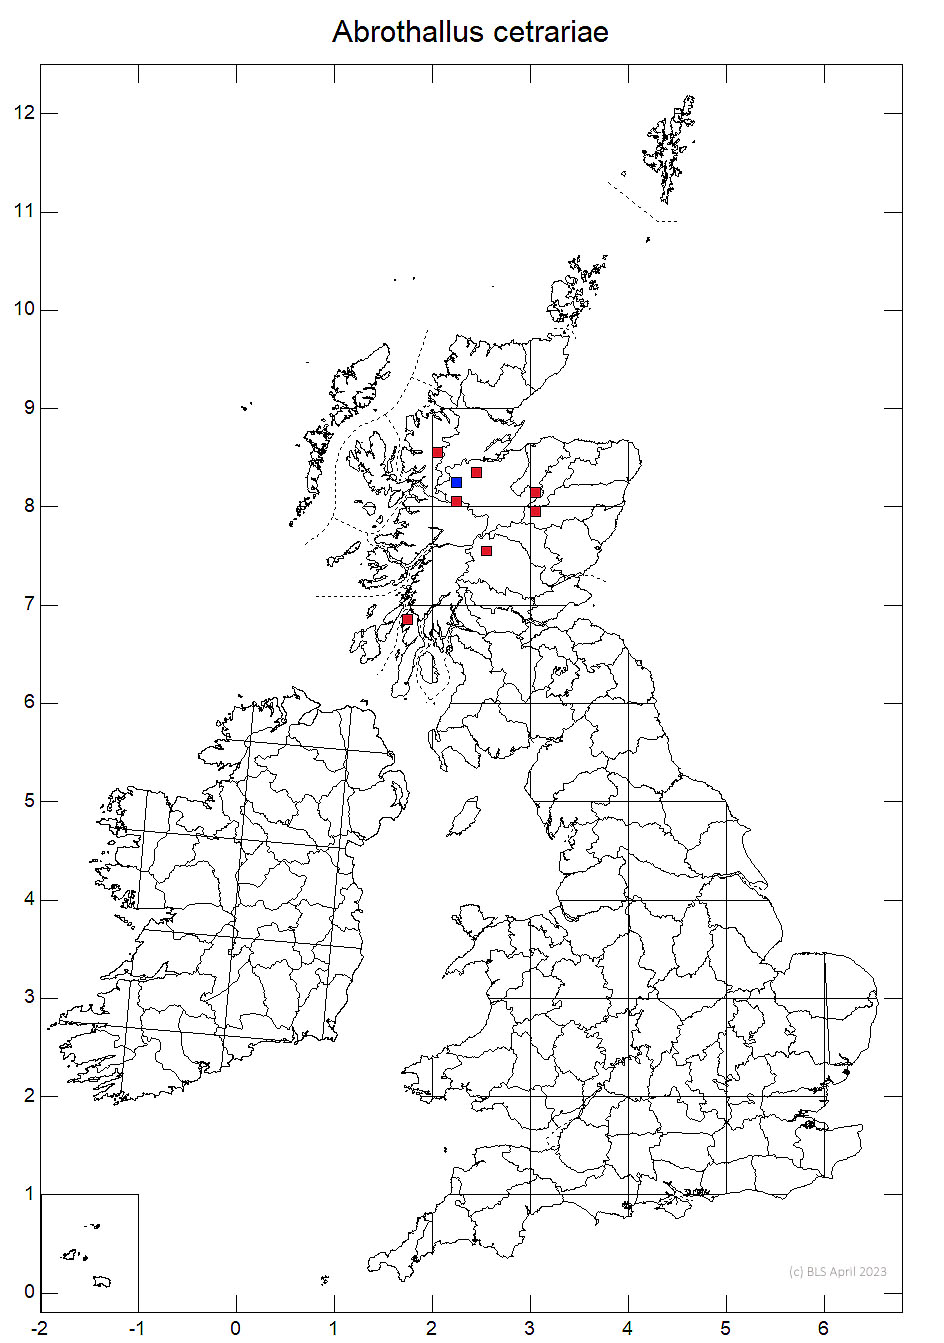 Abrothallus cetrariae 10km sq distribution map